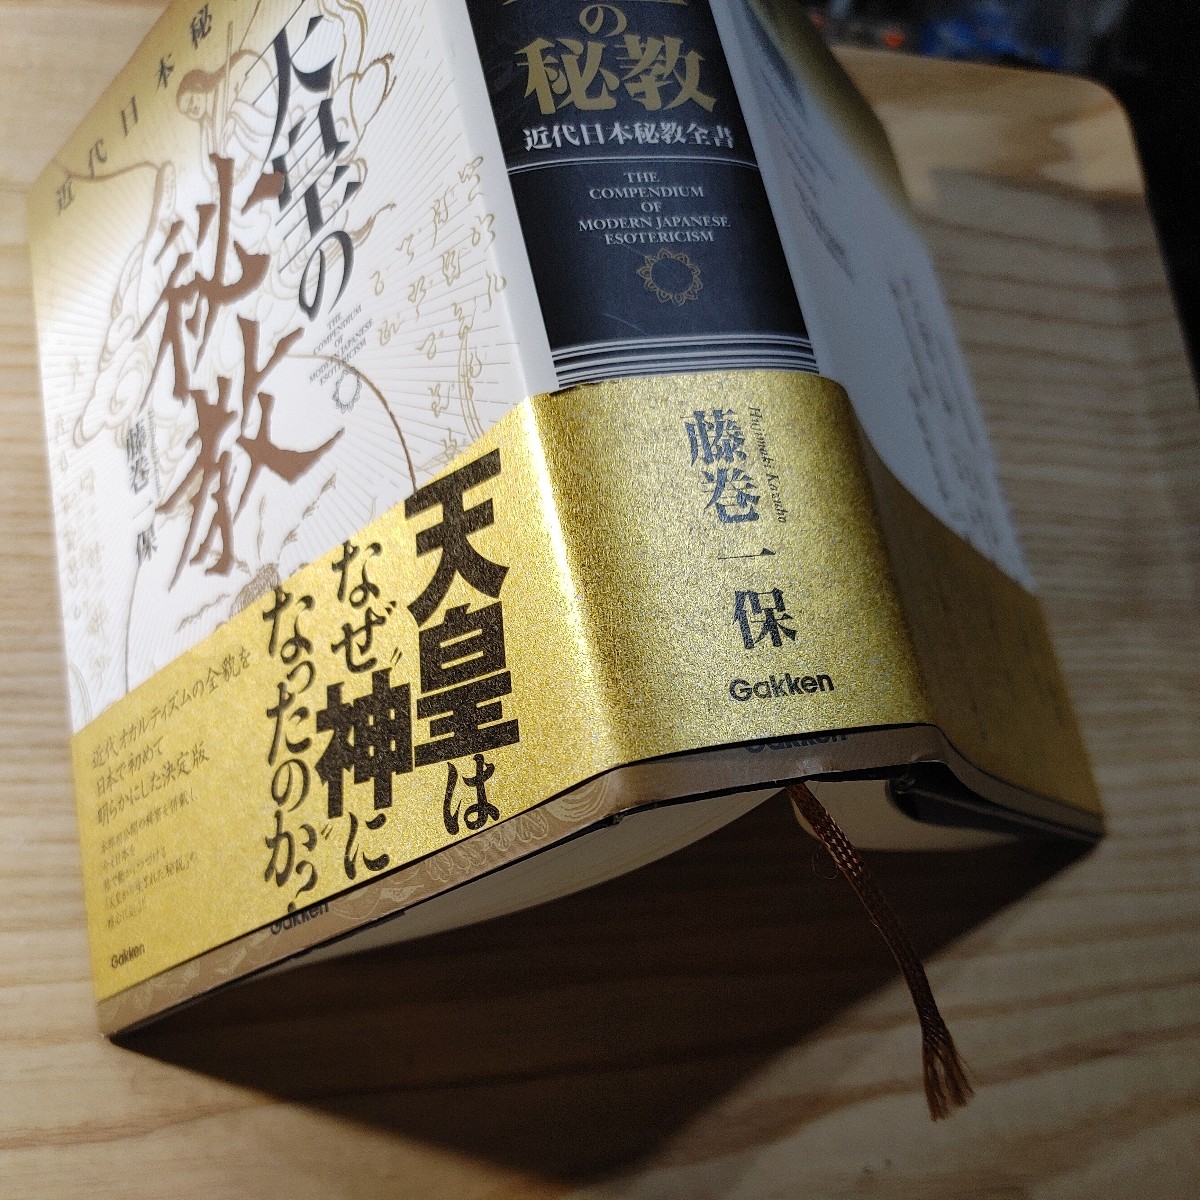 [ старая книга .] небо .. .. новое время Япония .. все документ глициния шт один гарантия | работа 978-4-05-403972-8